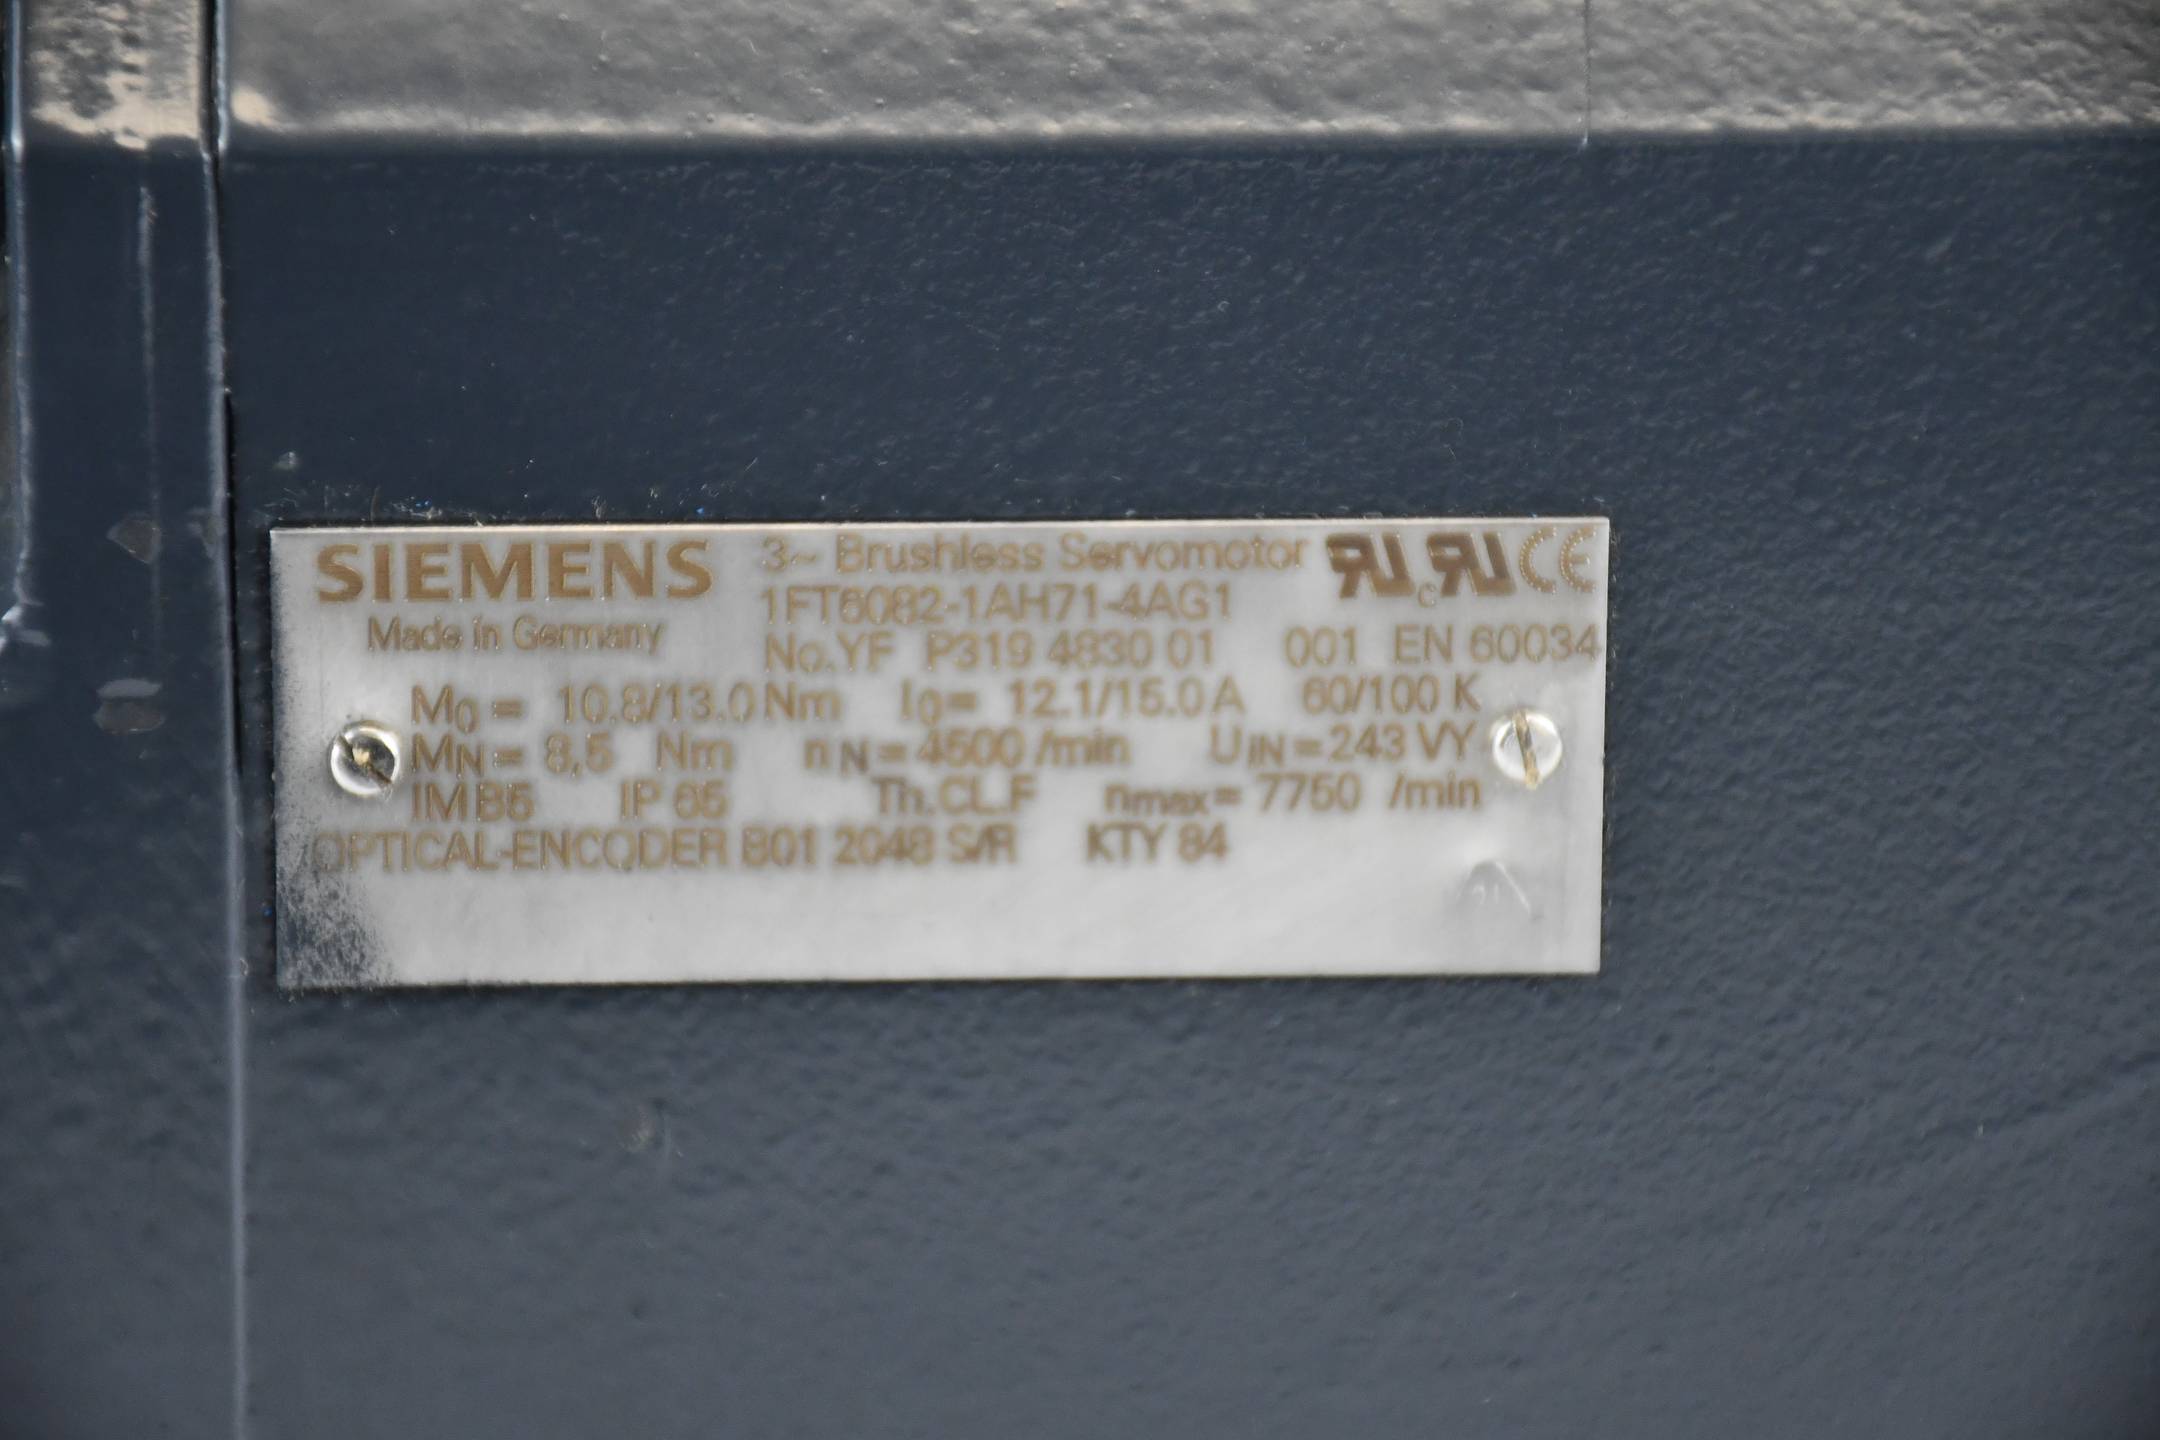 Siemens AC AC-VSA-Motor ZK 600V 1FT6082-1AH71-4AG1 ( 1FT6 082-1AH71-4AG1 )